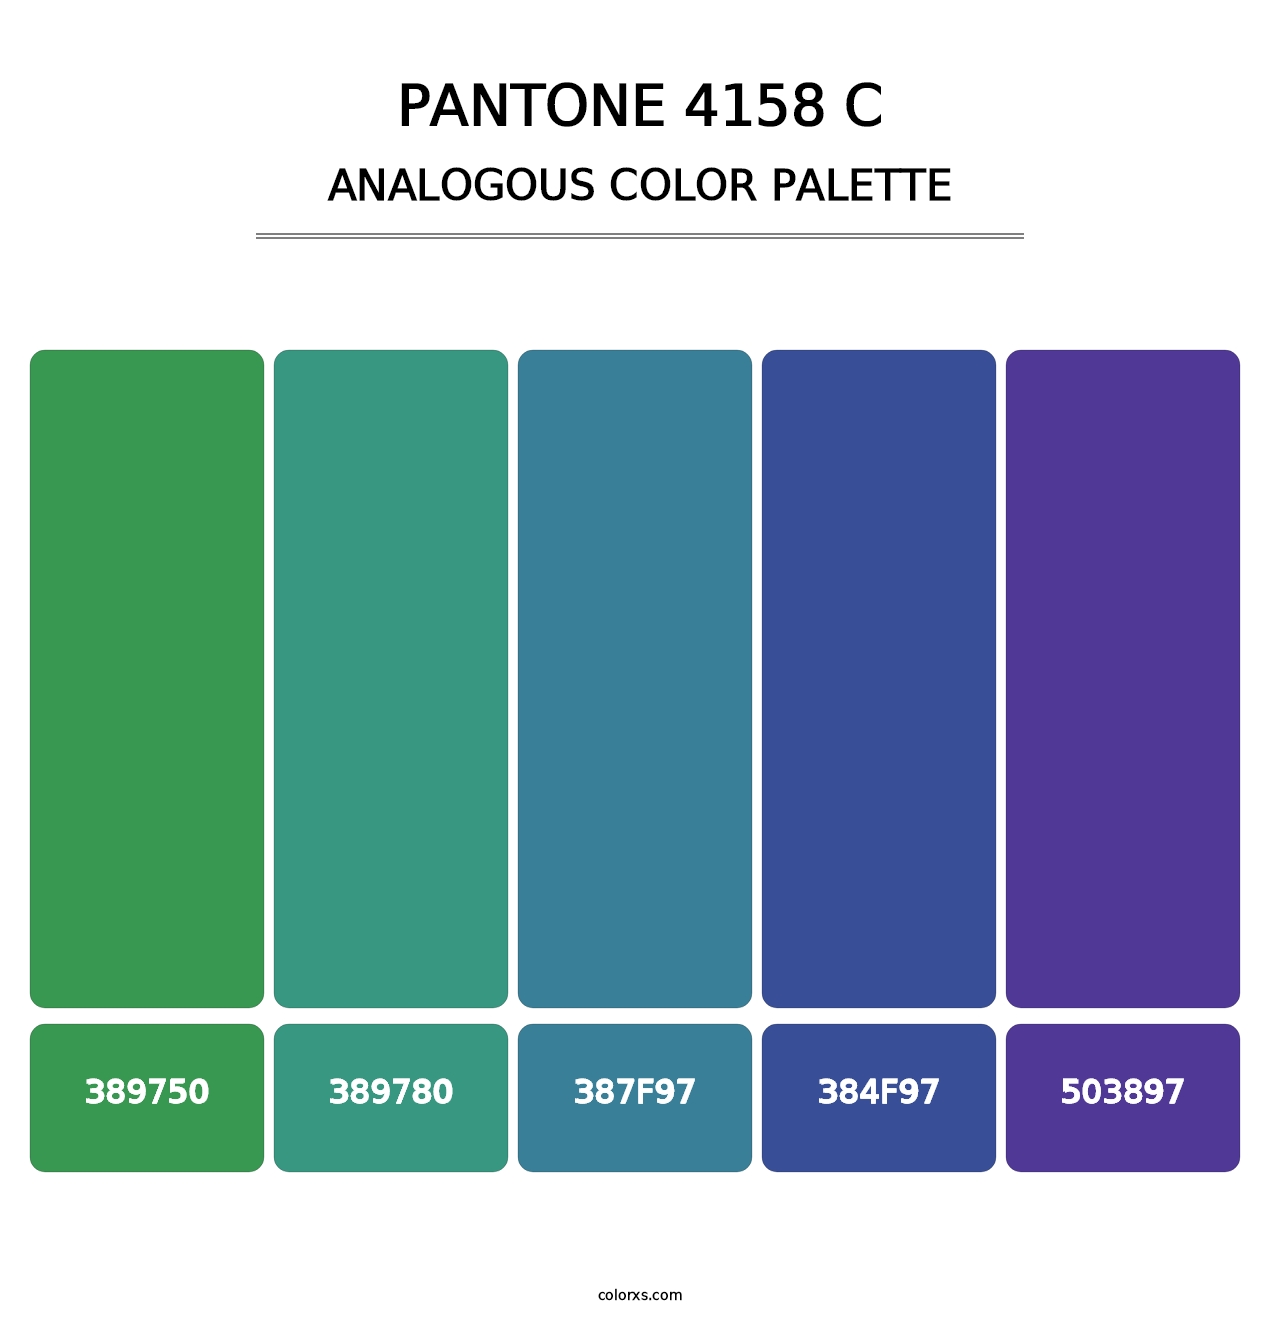 PANTONE 4158 C - Analogous Color Palette